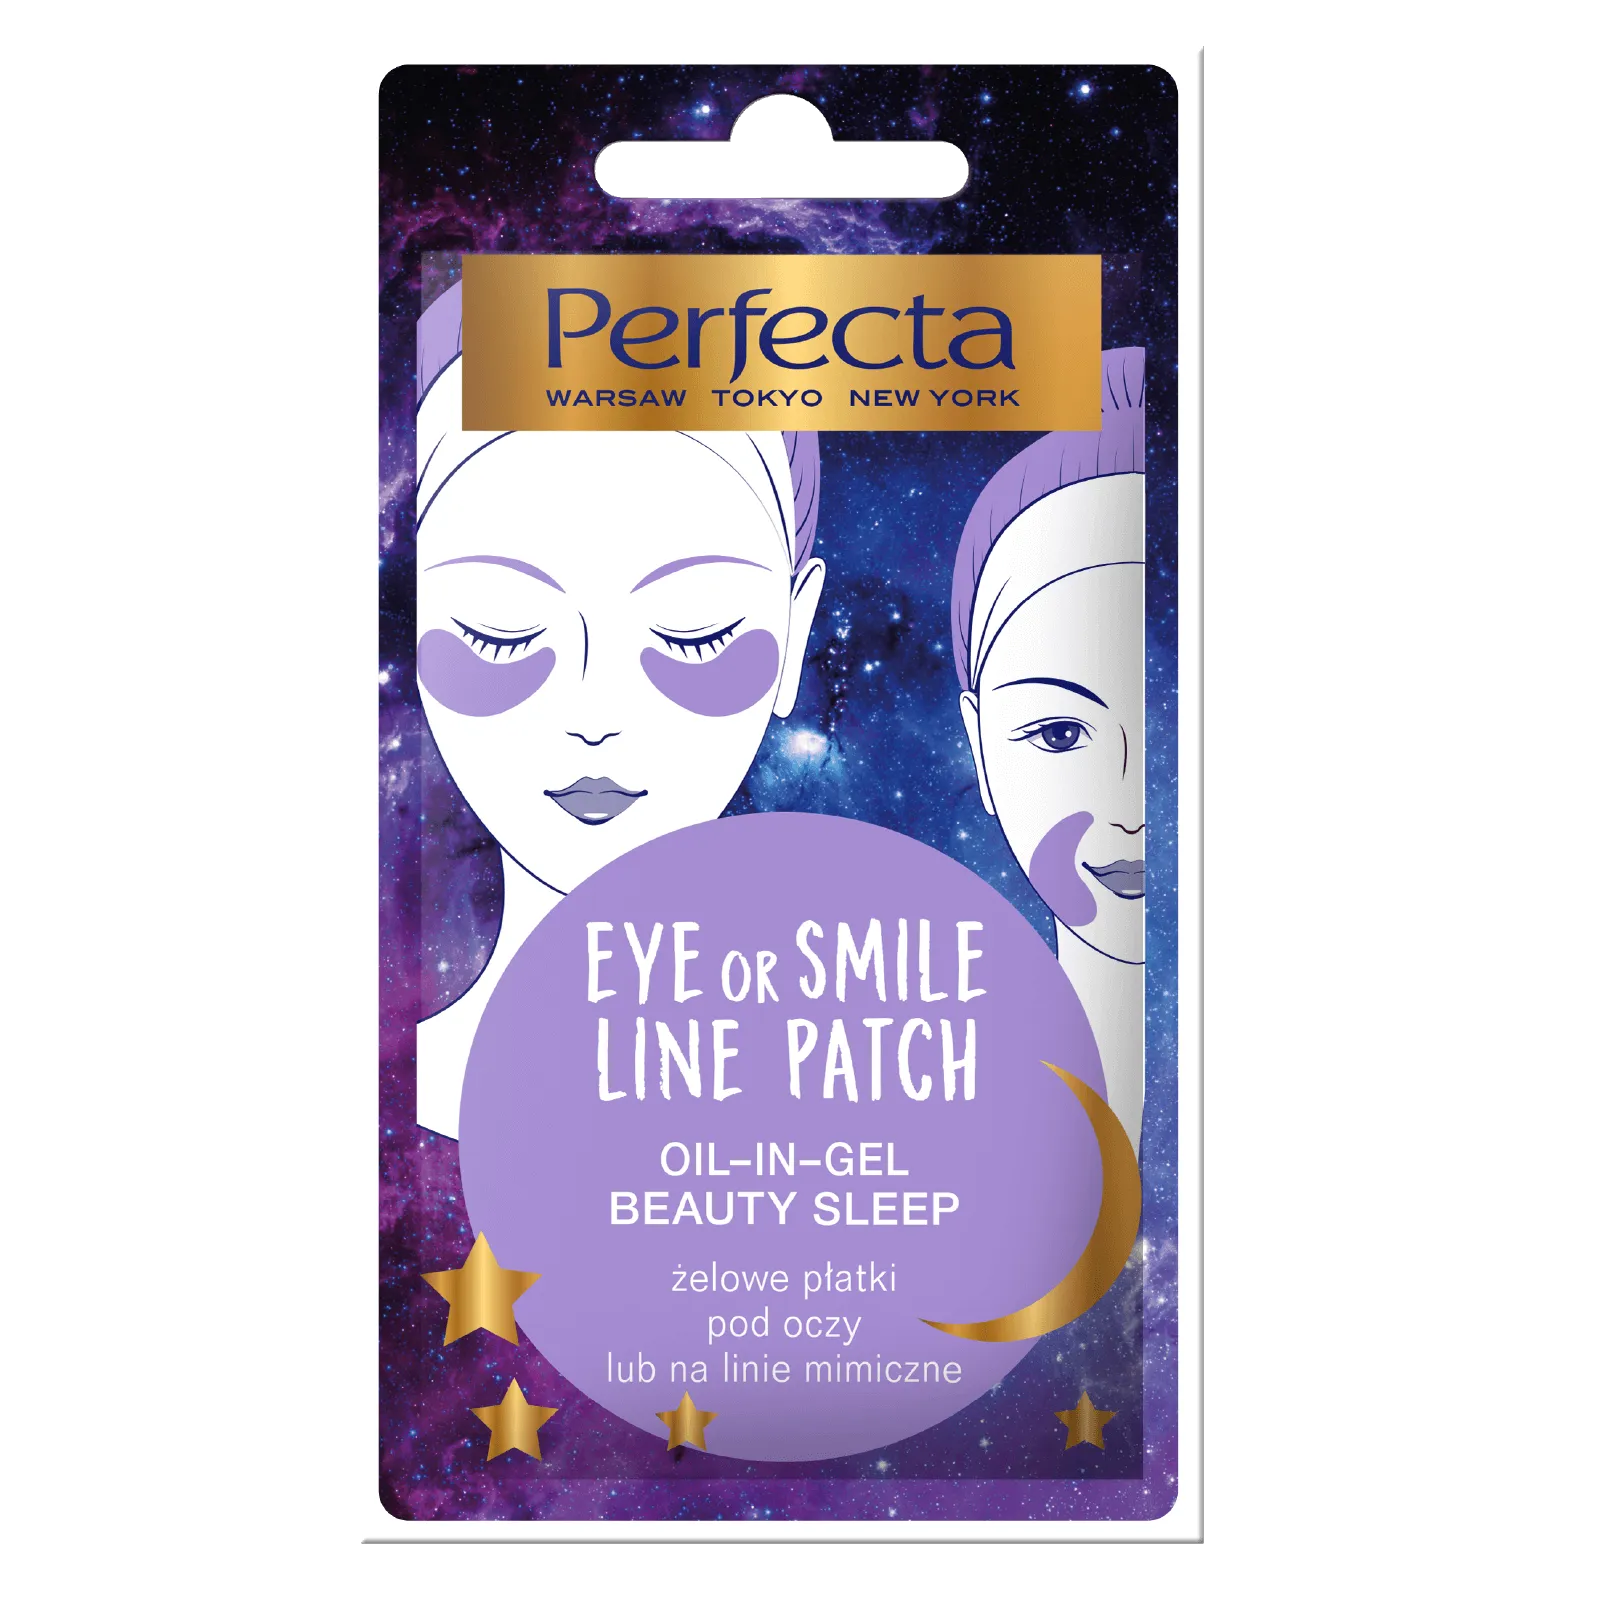 Perfecta Eye or Smile Line Patch żelowe płatki pod oczy lub na linie mimiczne, 1 szt.